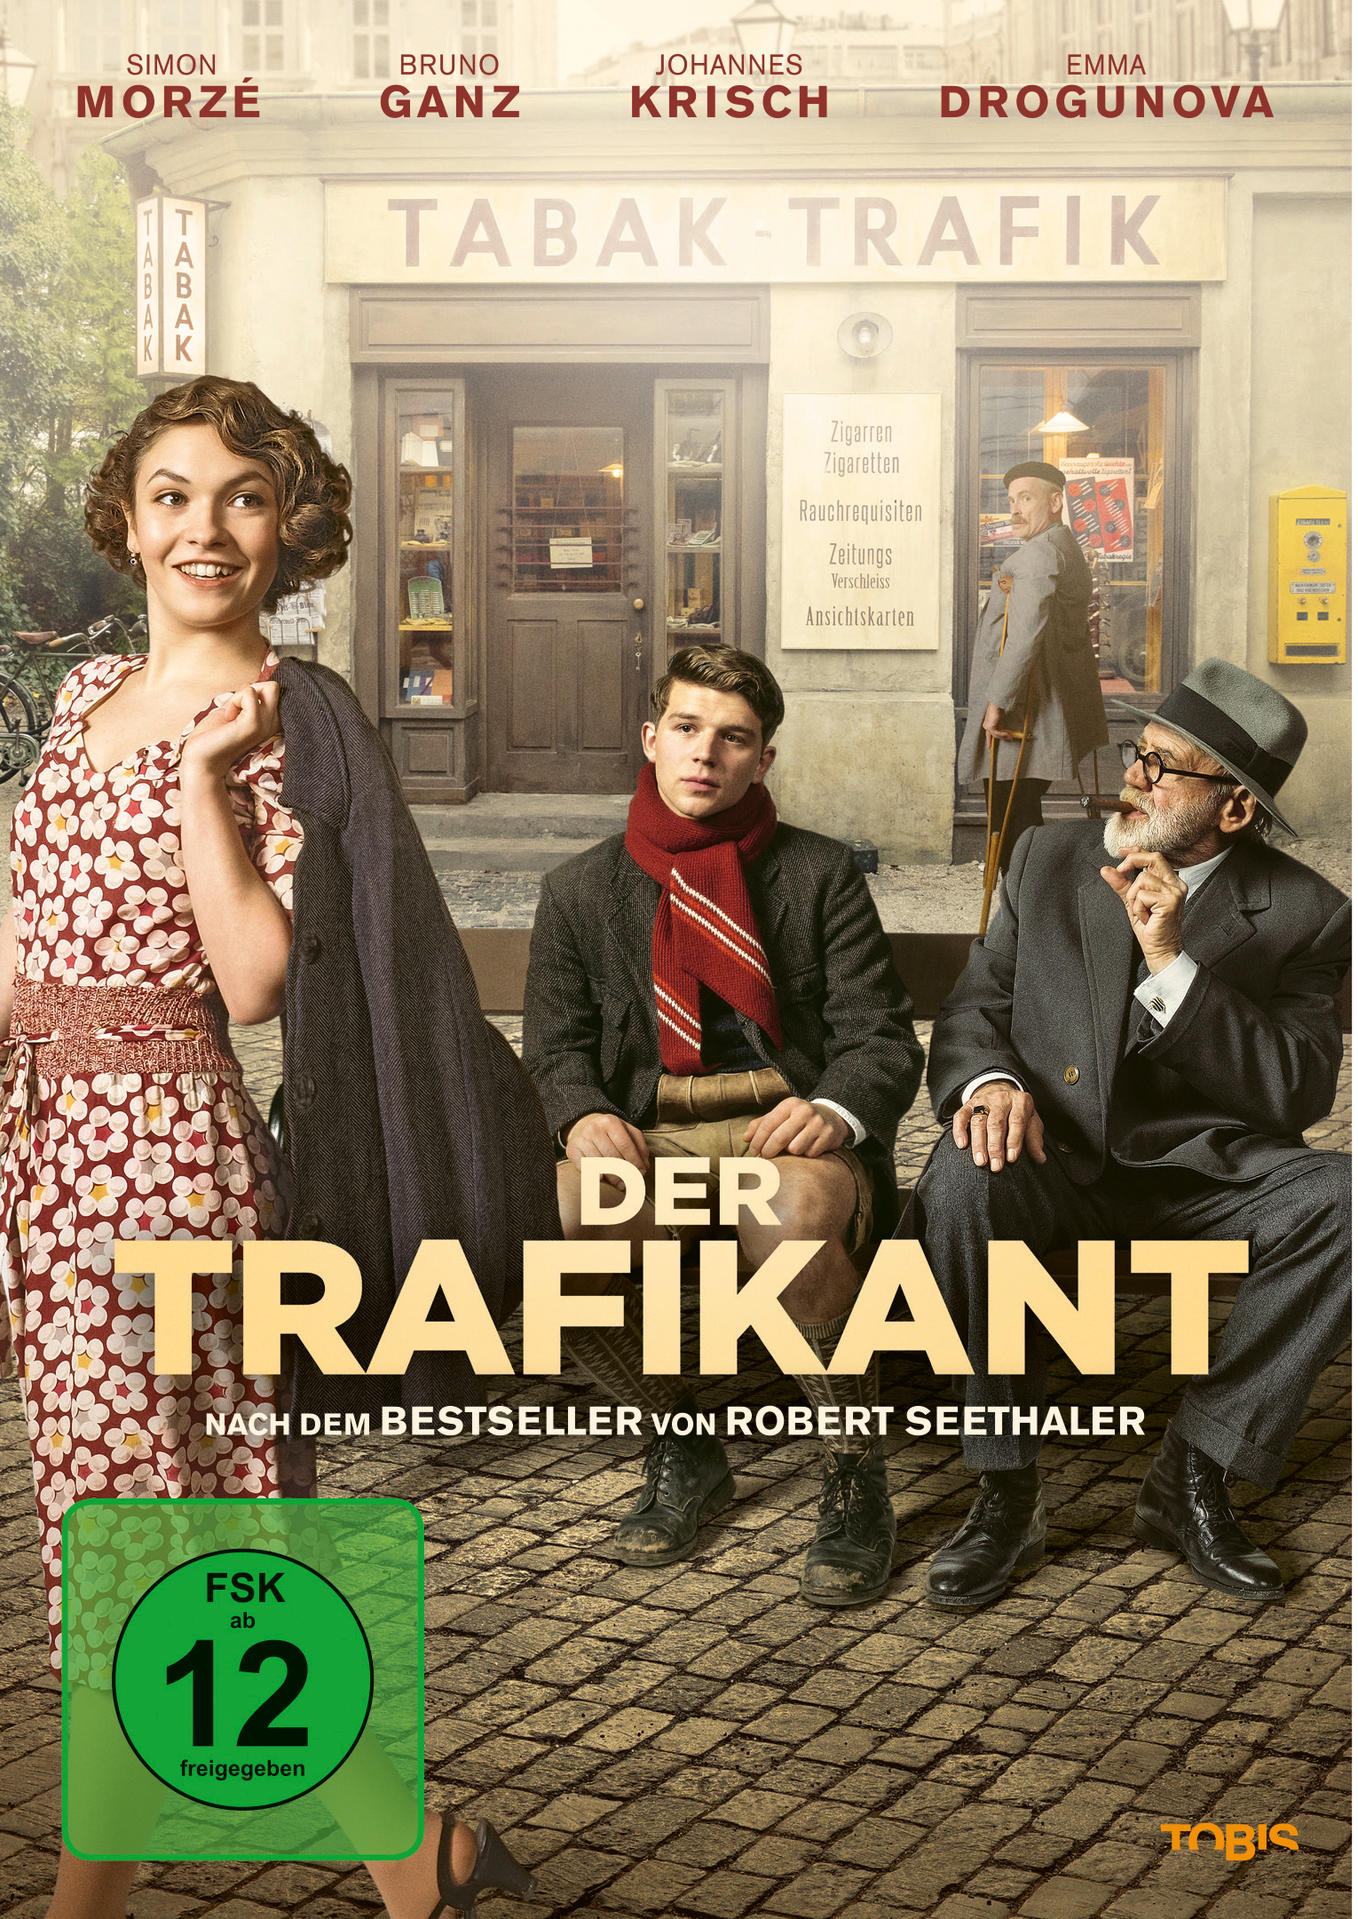 DVD TRAFIKANT DER